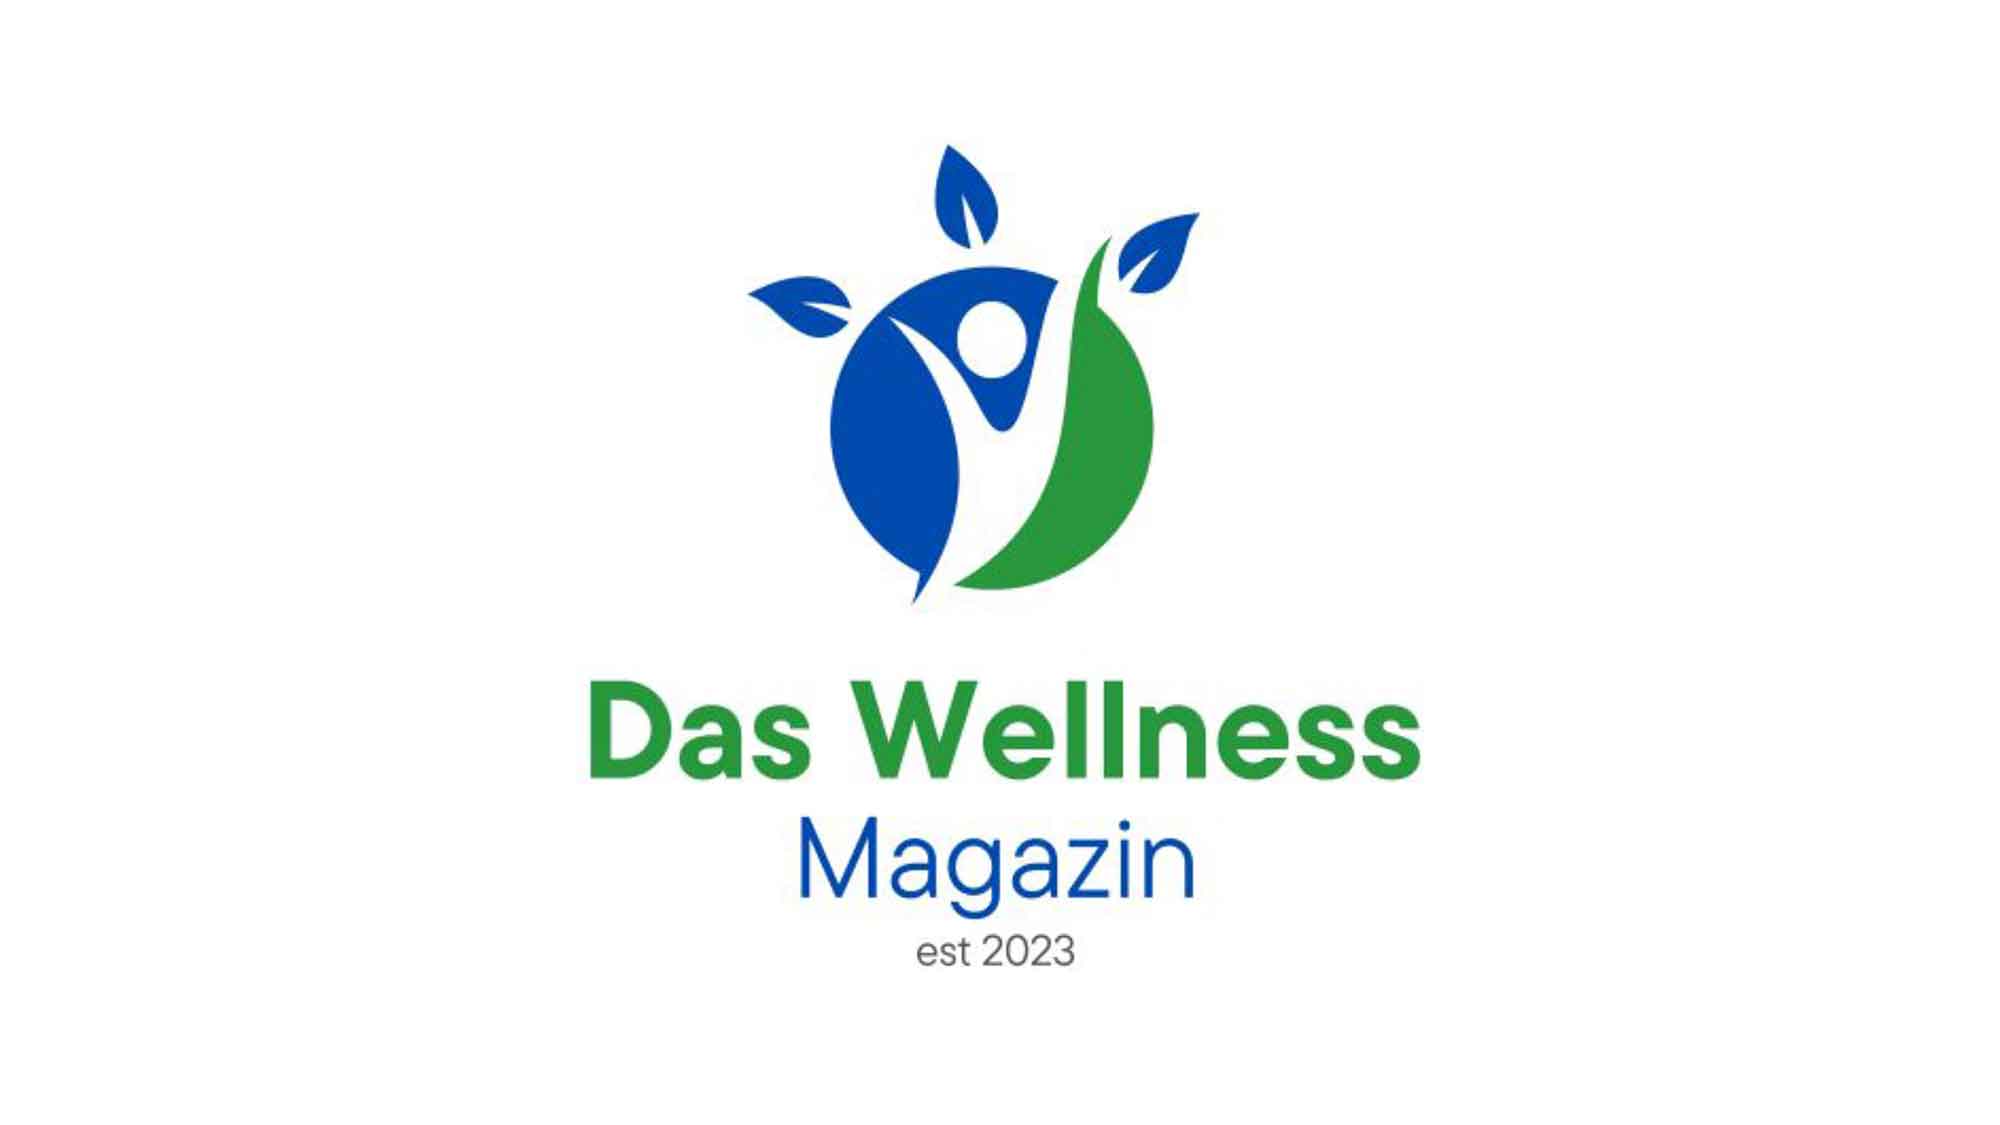 Das Wellness Magazin für Hotels, Trends, Angebote und alles rund um Wellness